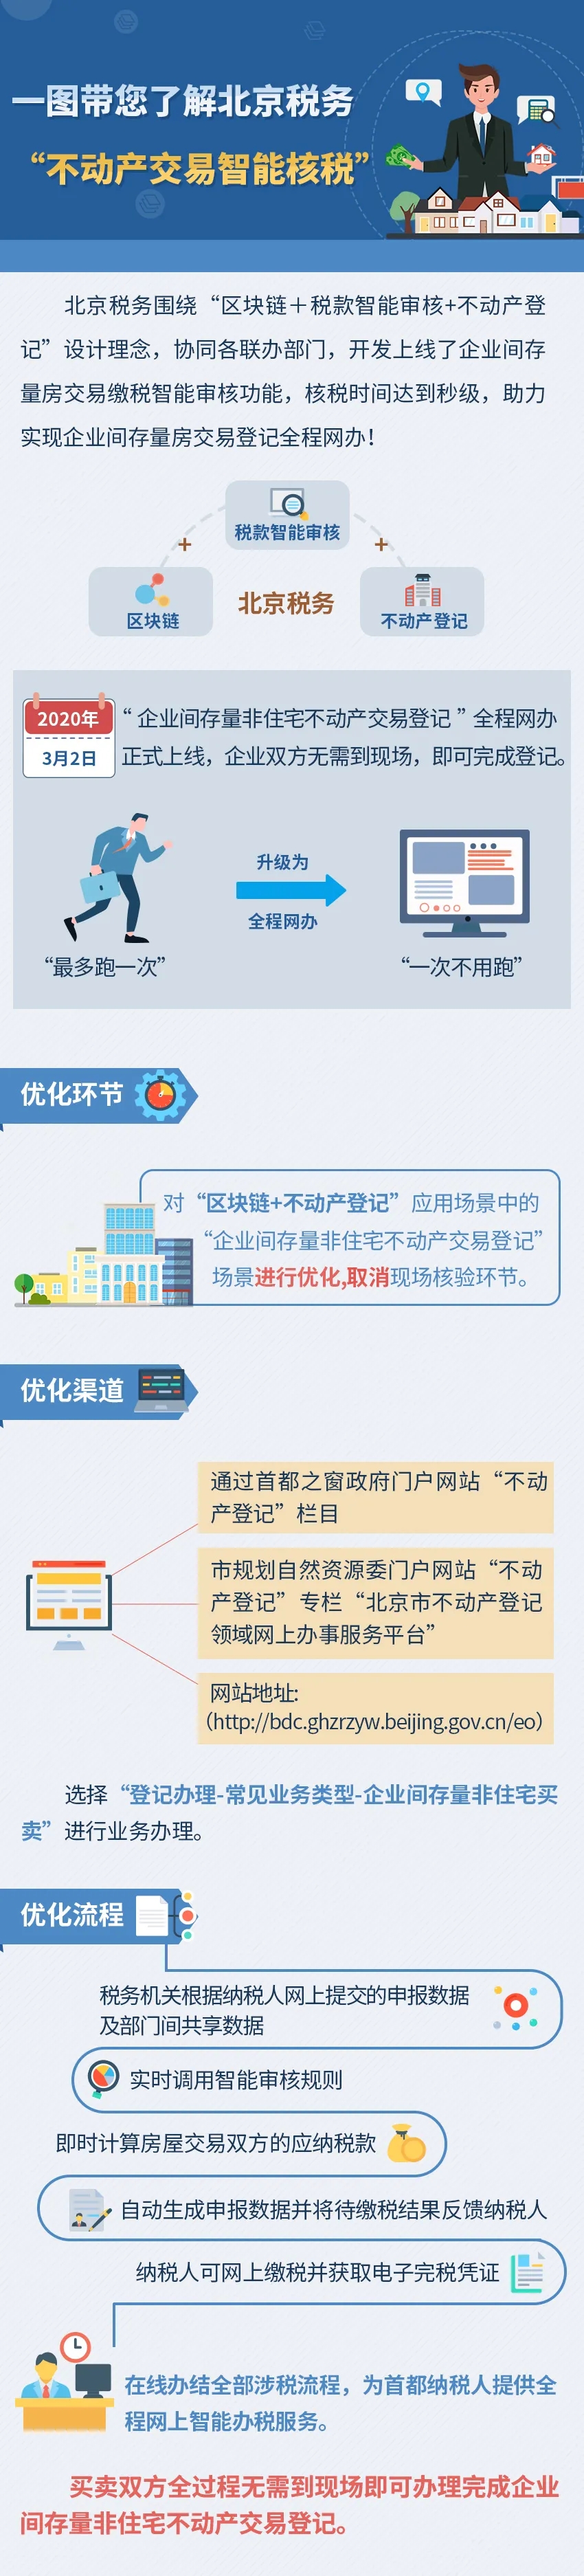 一图带您了解北京税务“不动产交易智能核税”